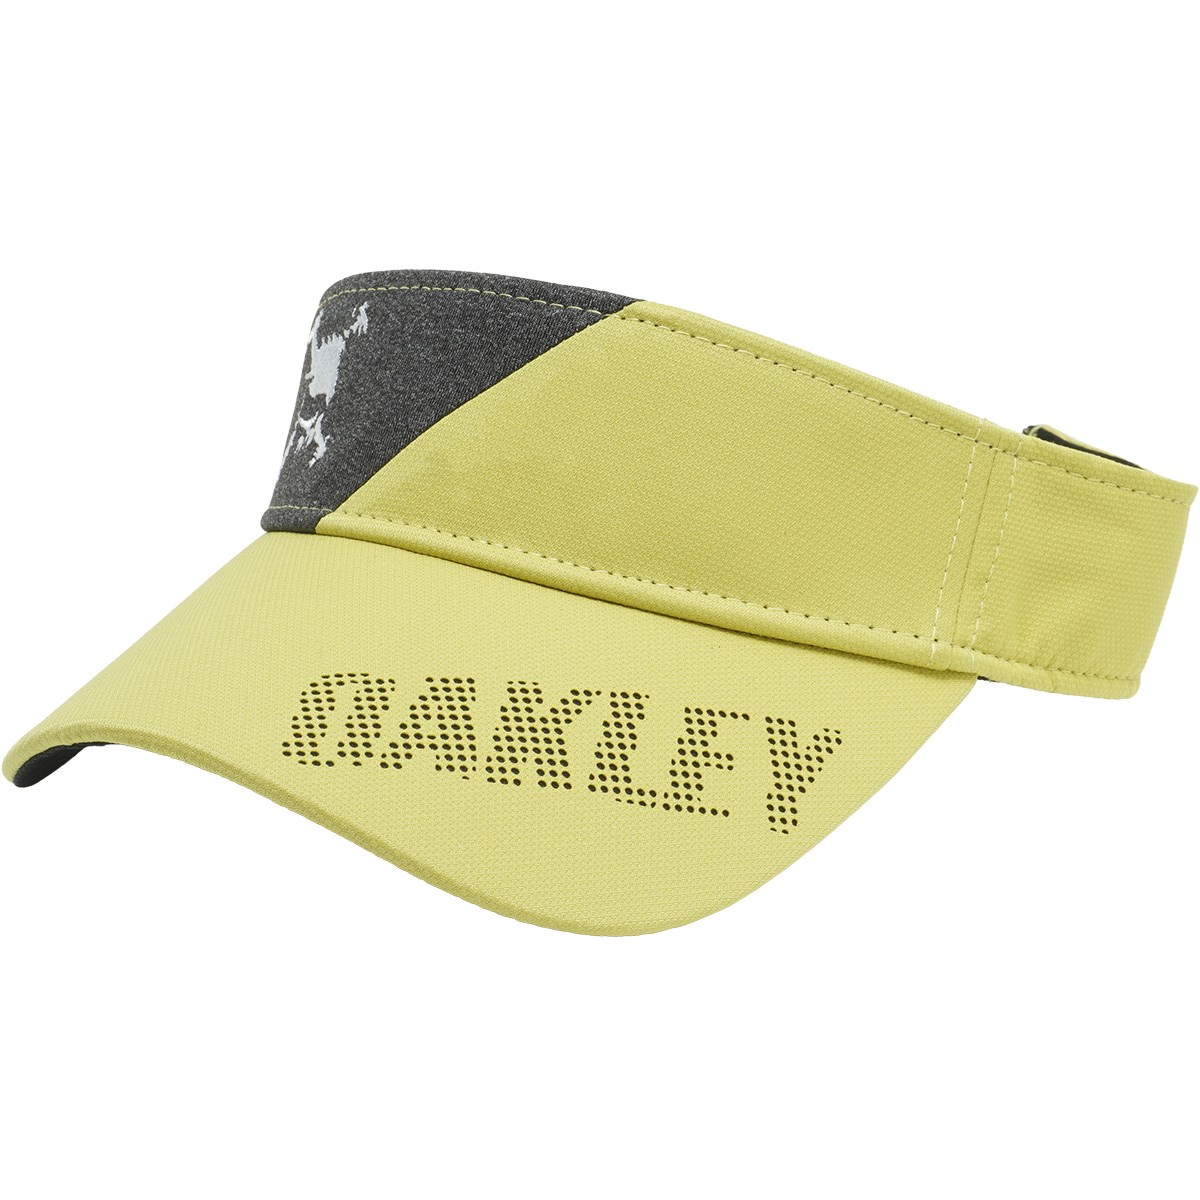 [2022年モデル] オークリー OAKLEY スカル 22.0 ハイブリッドサンバイザー ブラスイエロー 550 FOS901151 メンズ ゴルフウェア 帽子